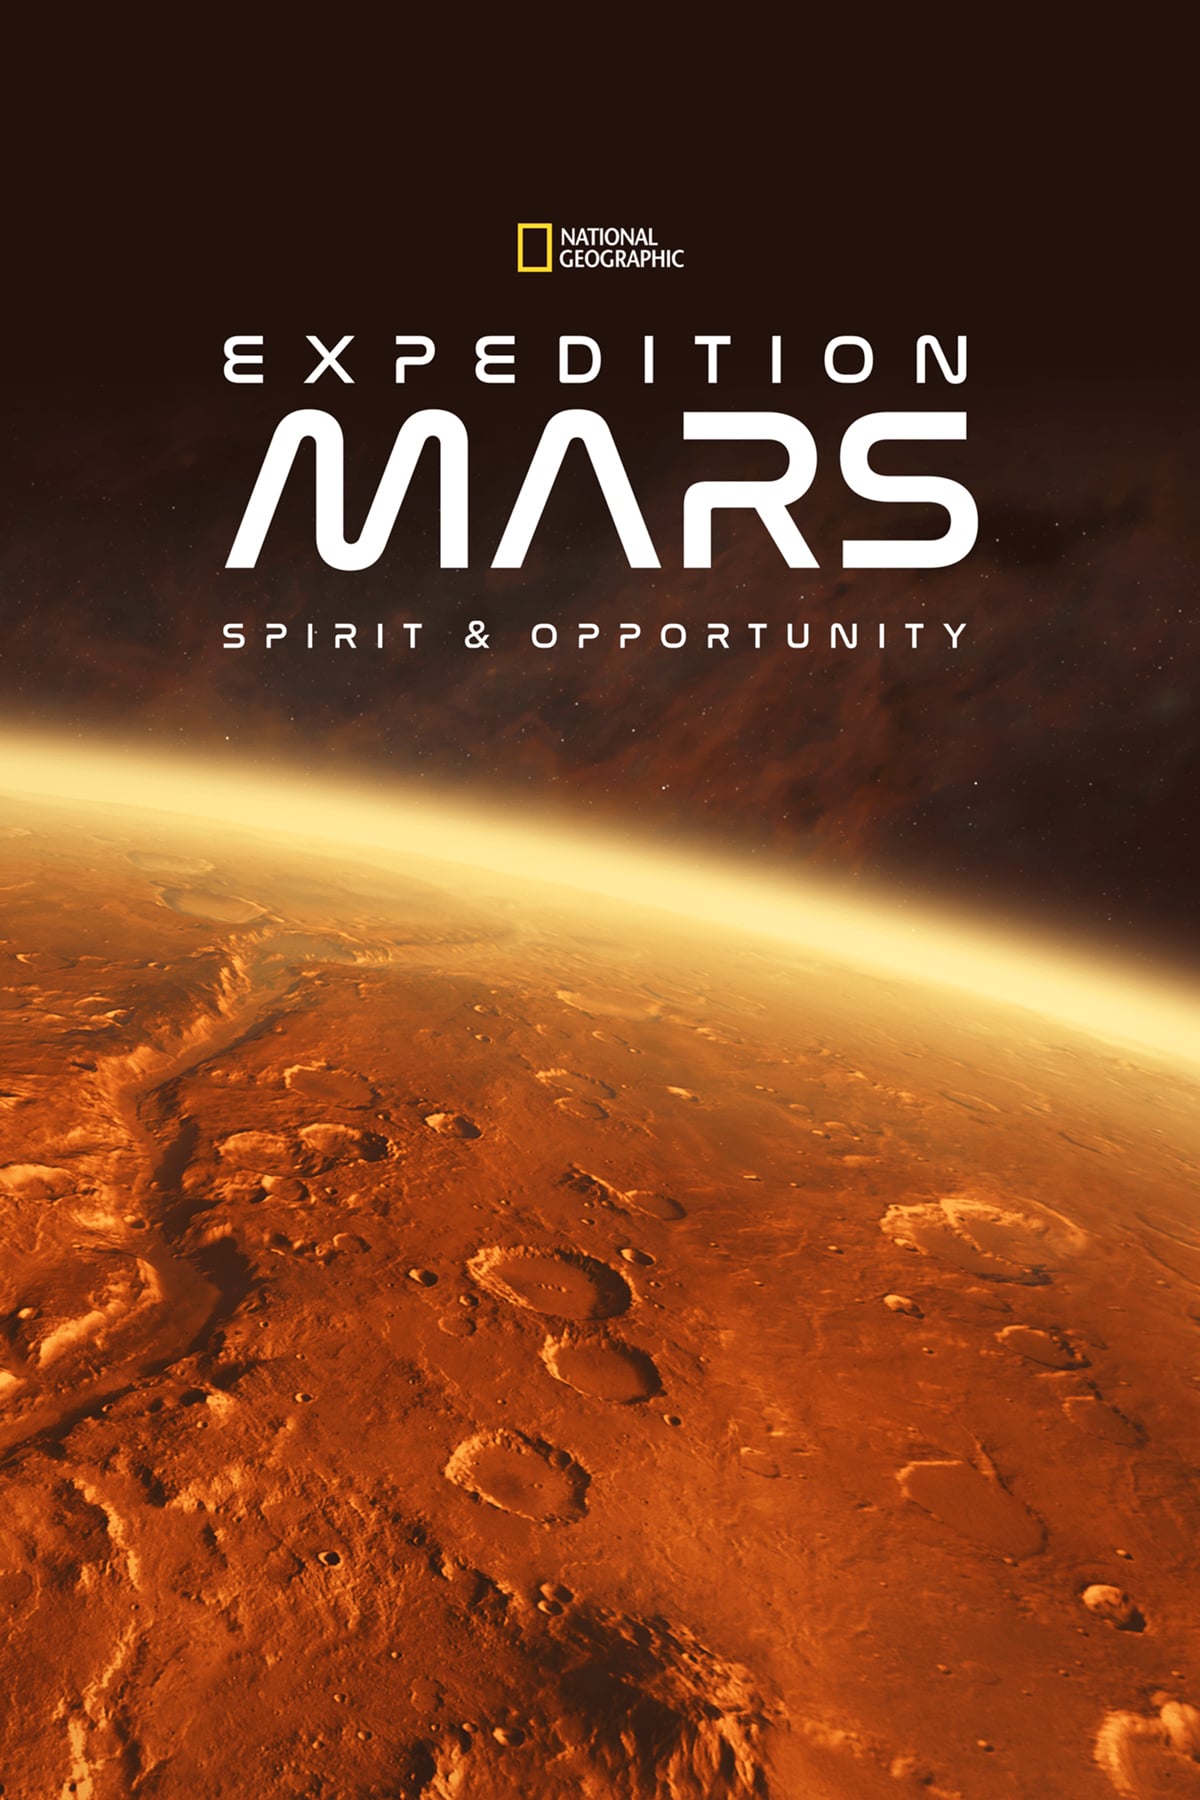 Caratula de Expedition Mars (Expedición a Marte) 